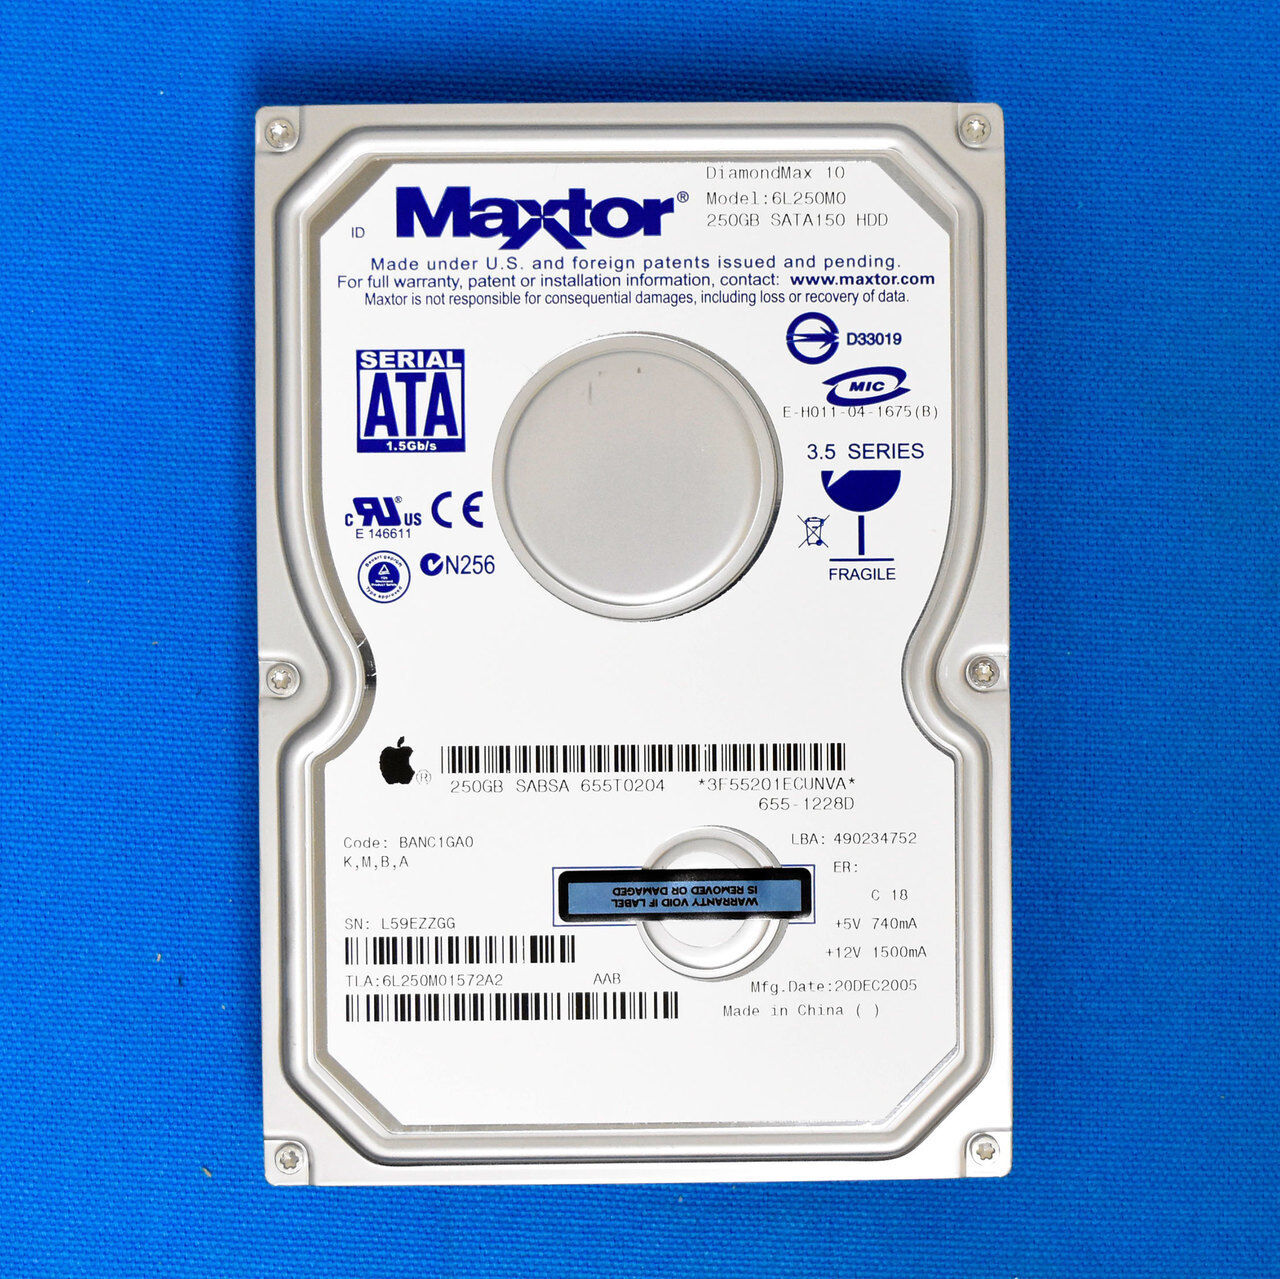 Apple Maxtor 250GB 6L250M0, 655-1228D DimondMax-10 7200 RPM 8MB Cache SATA 1.5Gb